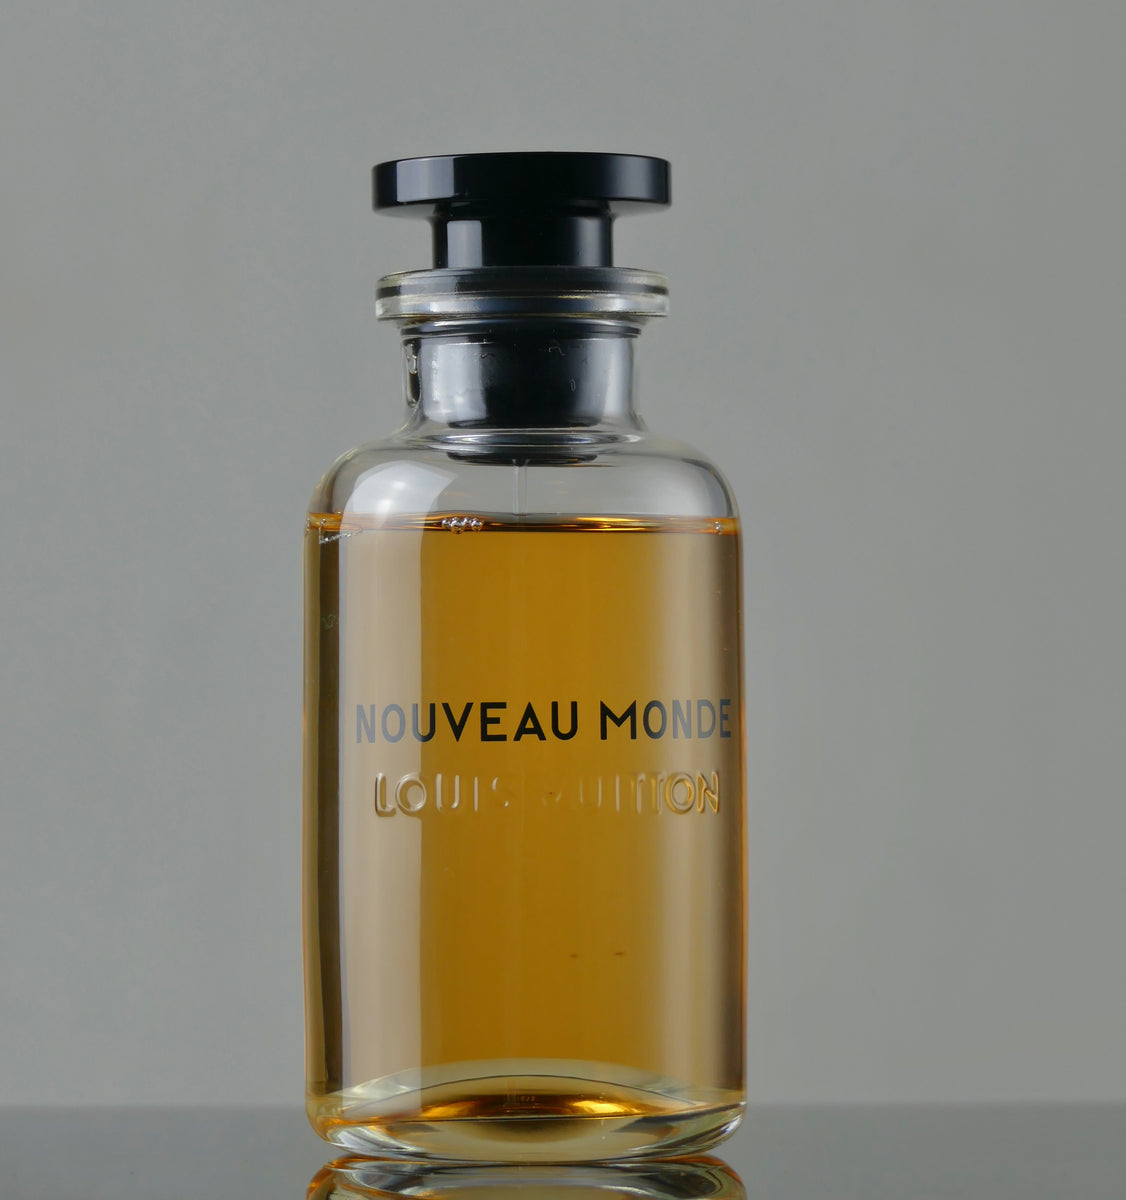 NOUVEAU MONDE BY LOUIS VUITTON (Fragrance Review 2021) 